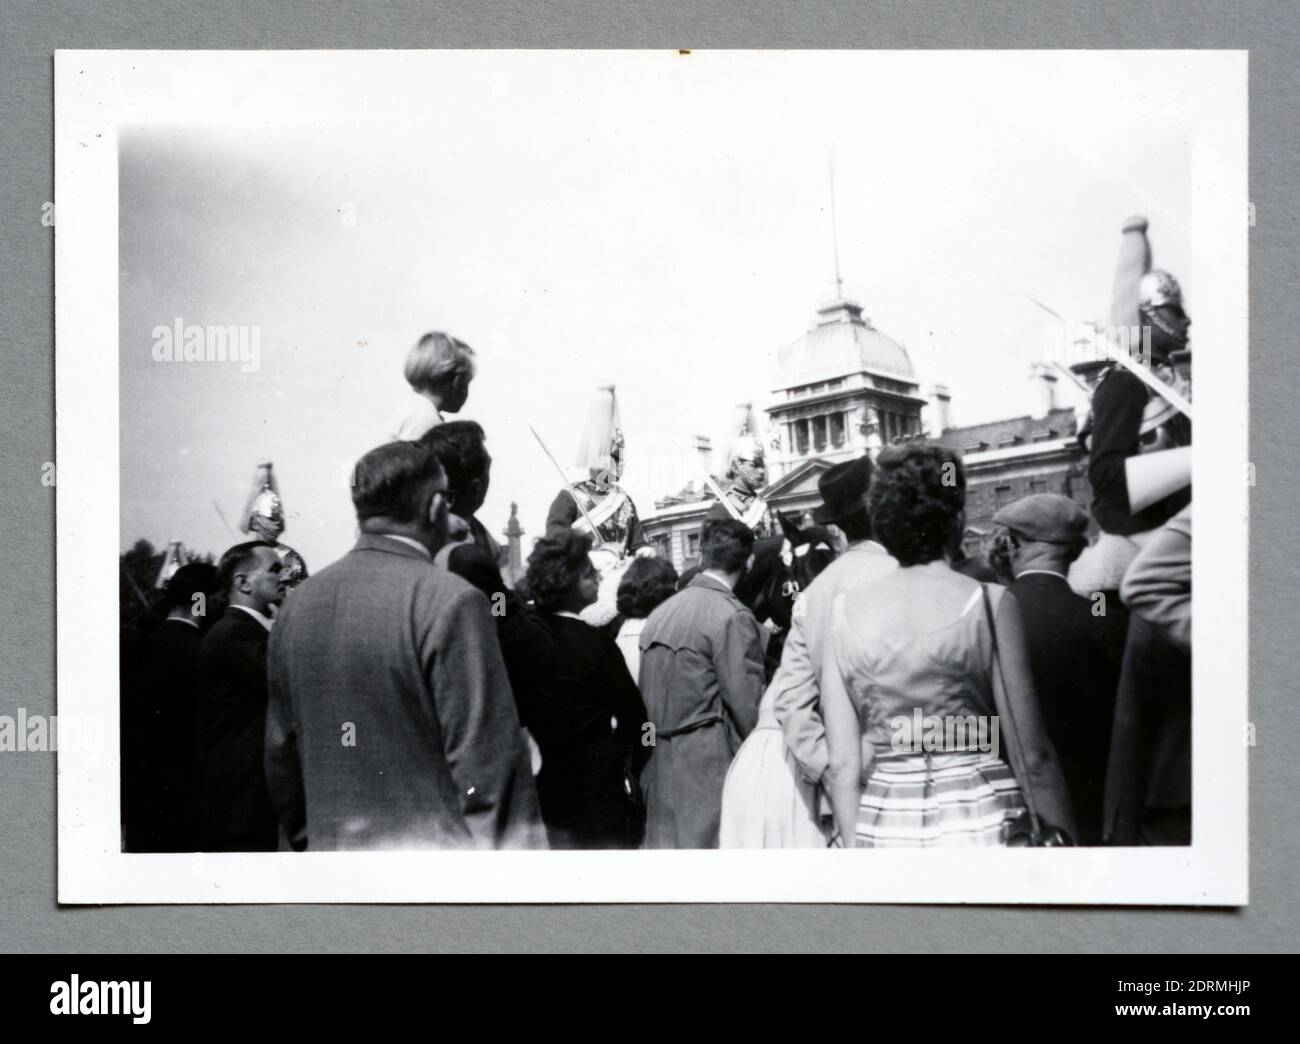 Photographie d'une empreinte de Horse Guards Parade à Londres en 1957, un cliché amateur qui a été pris avec un appareil photo Brownie 127. Banque D'Images